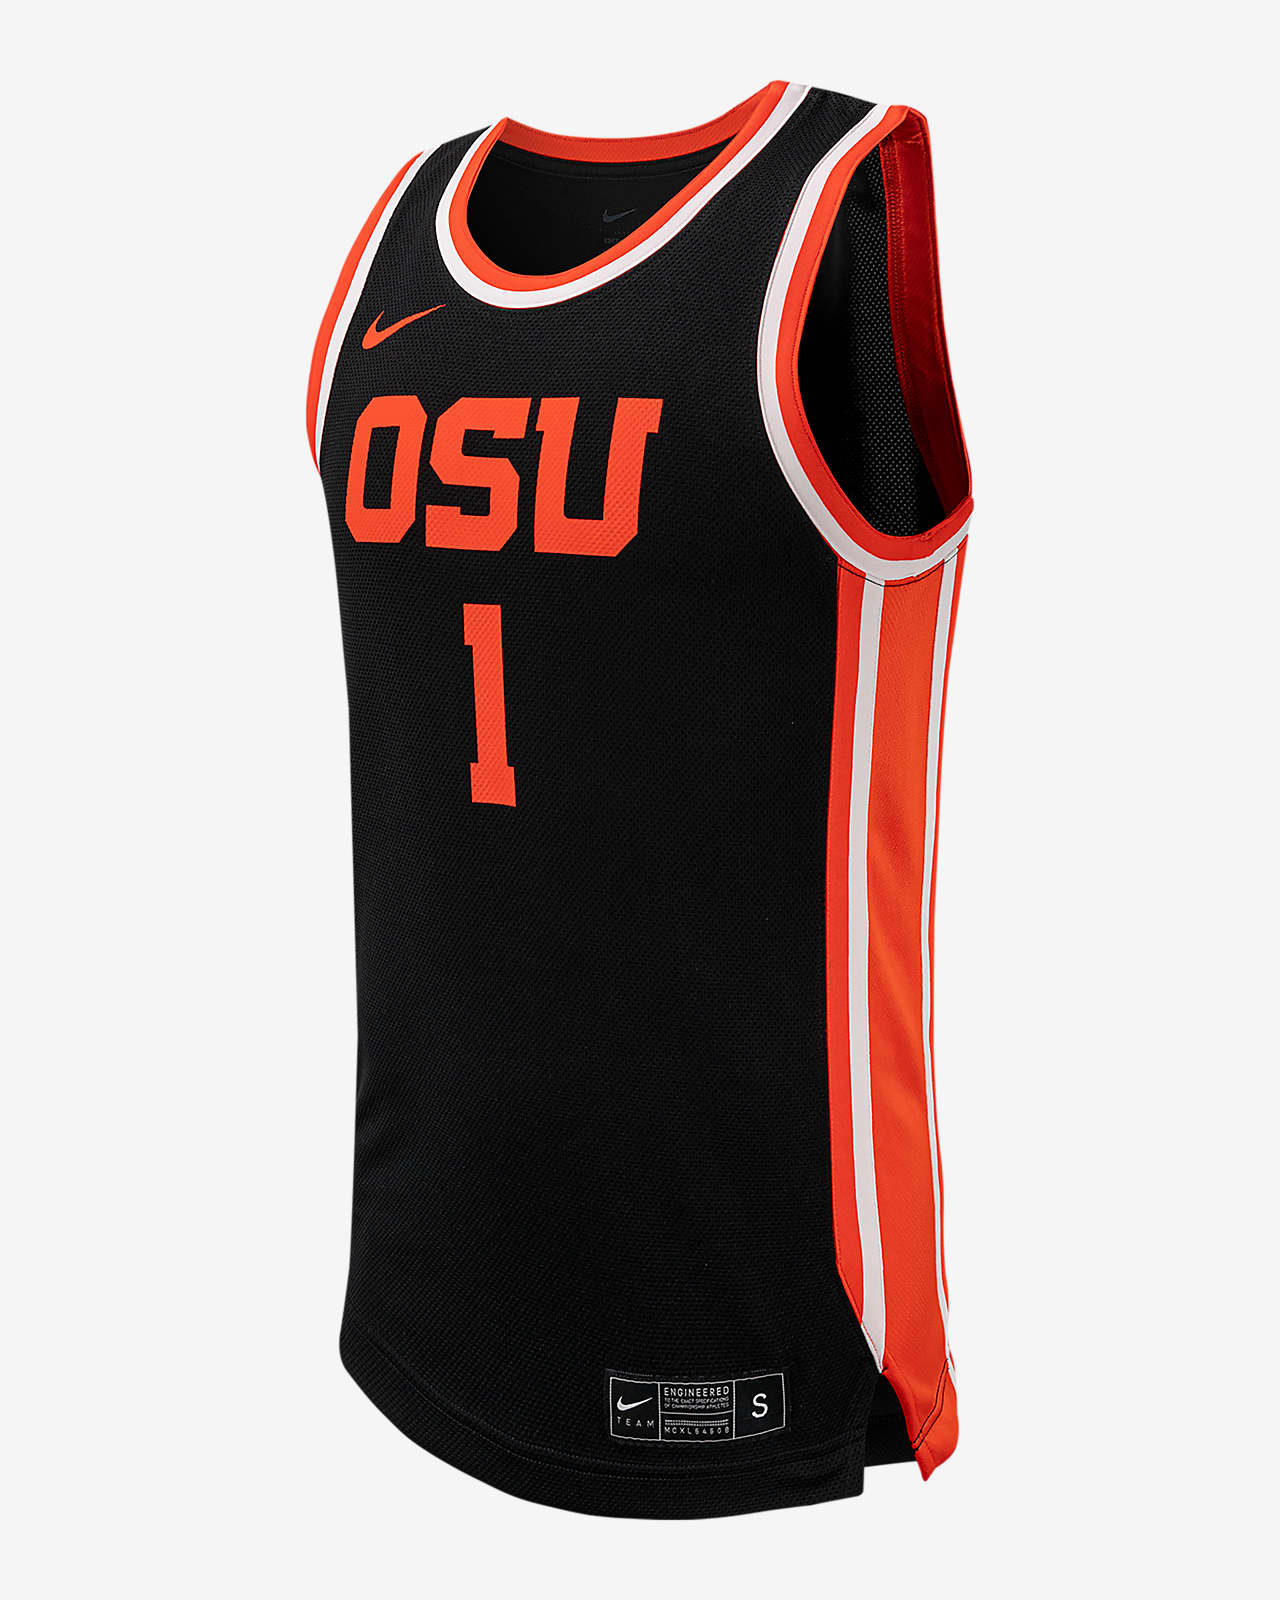 Jersey de básquetbol universitario Nike Replica para hombre Oregon State